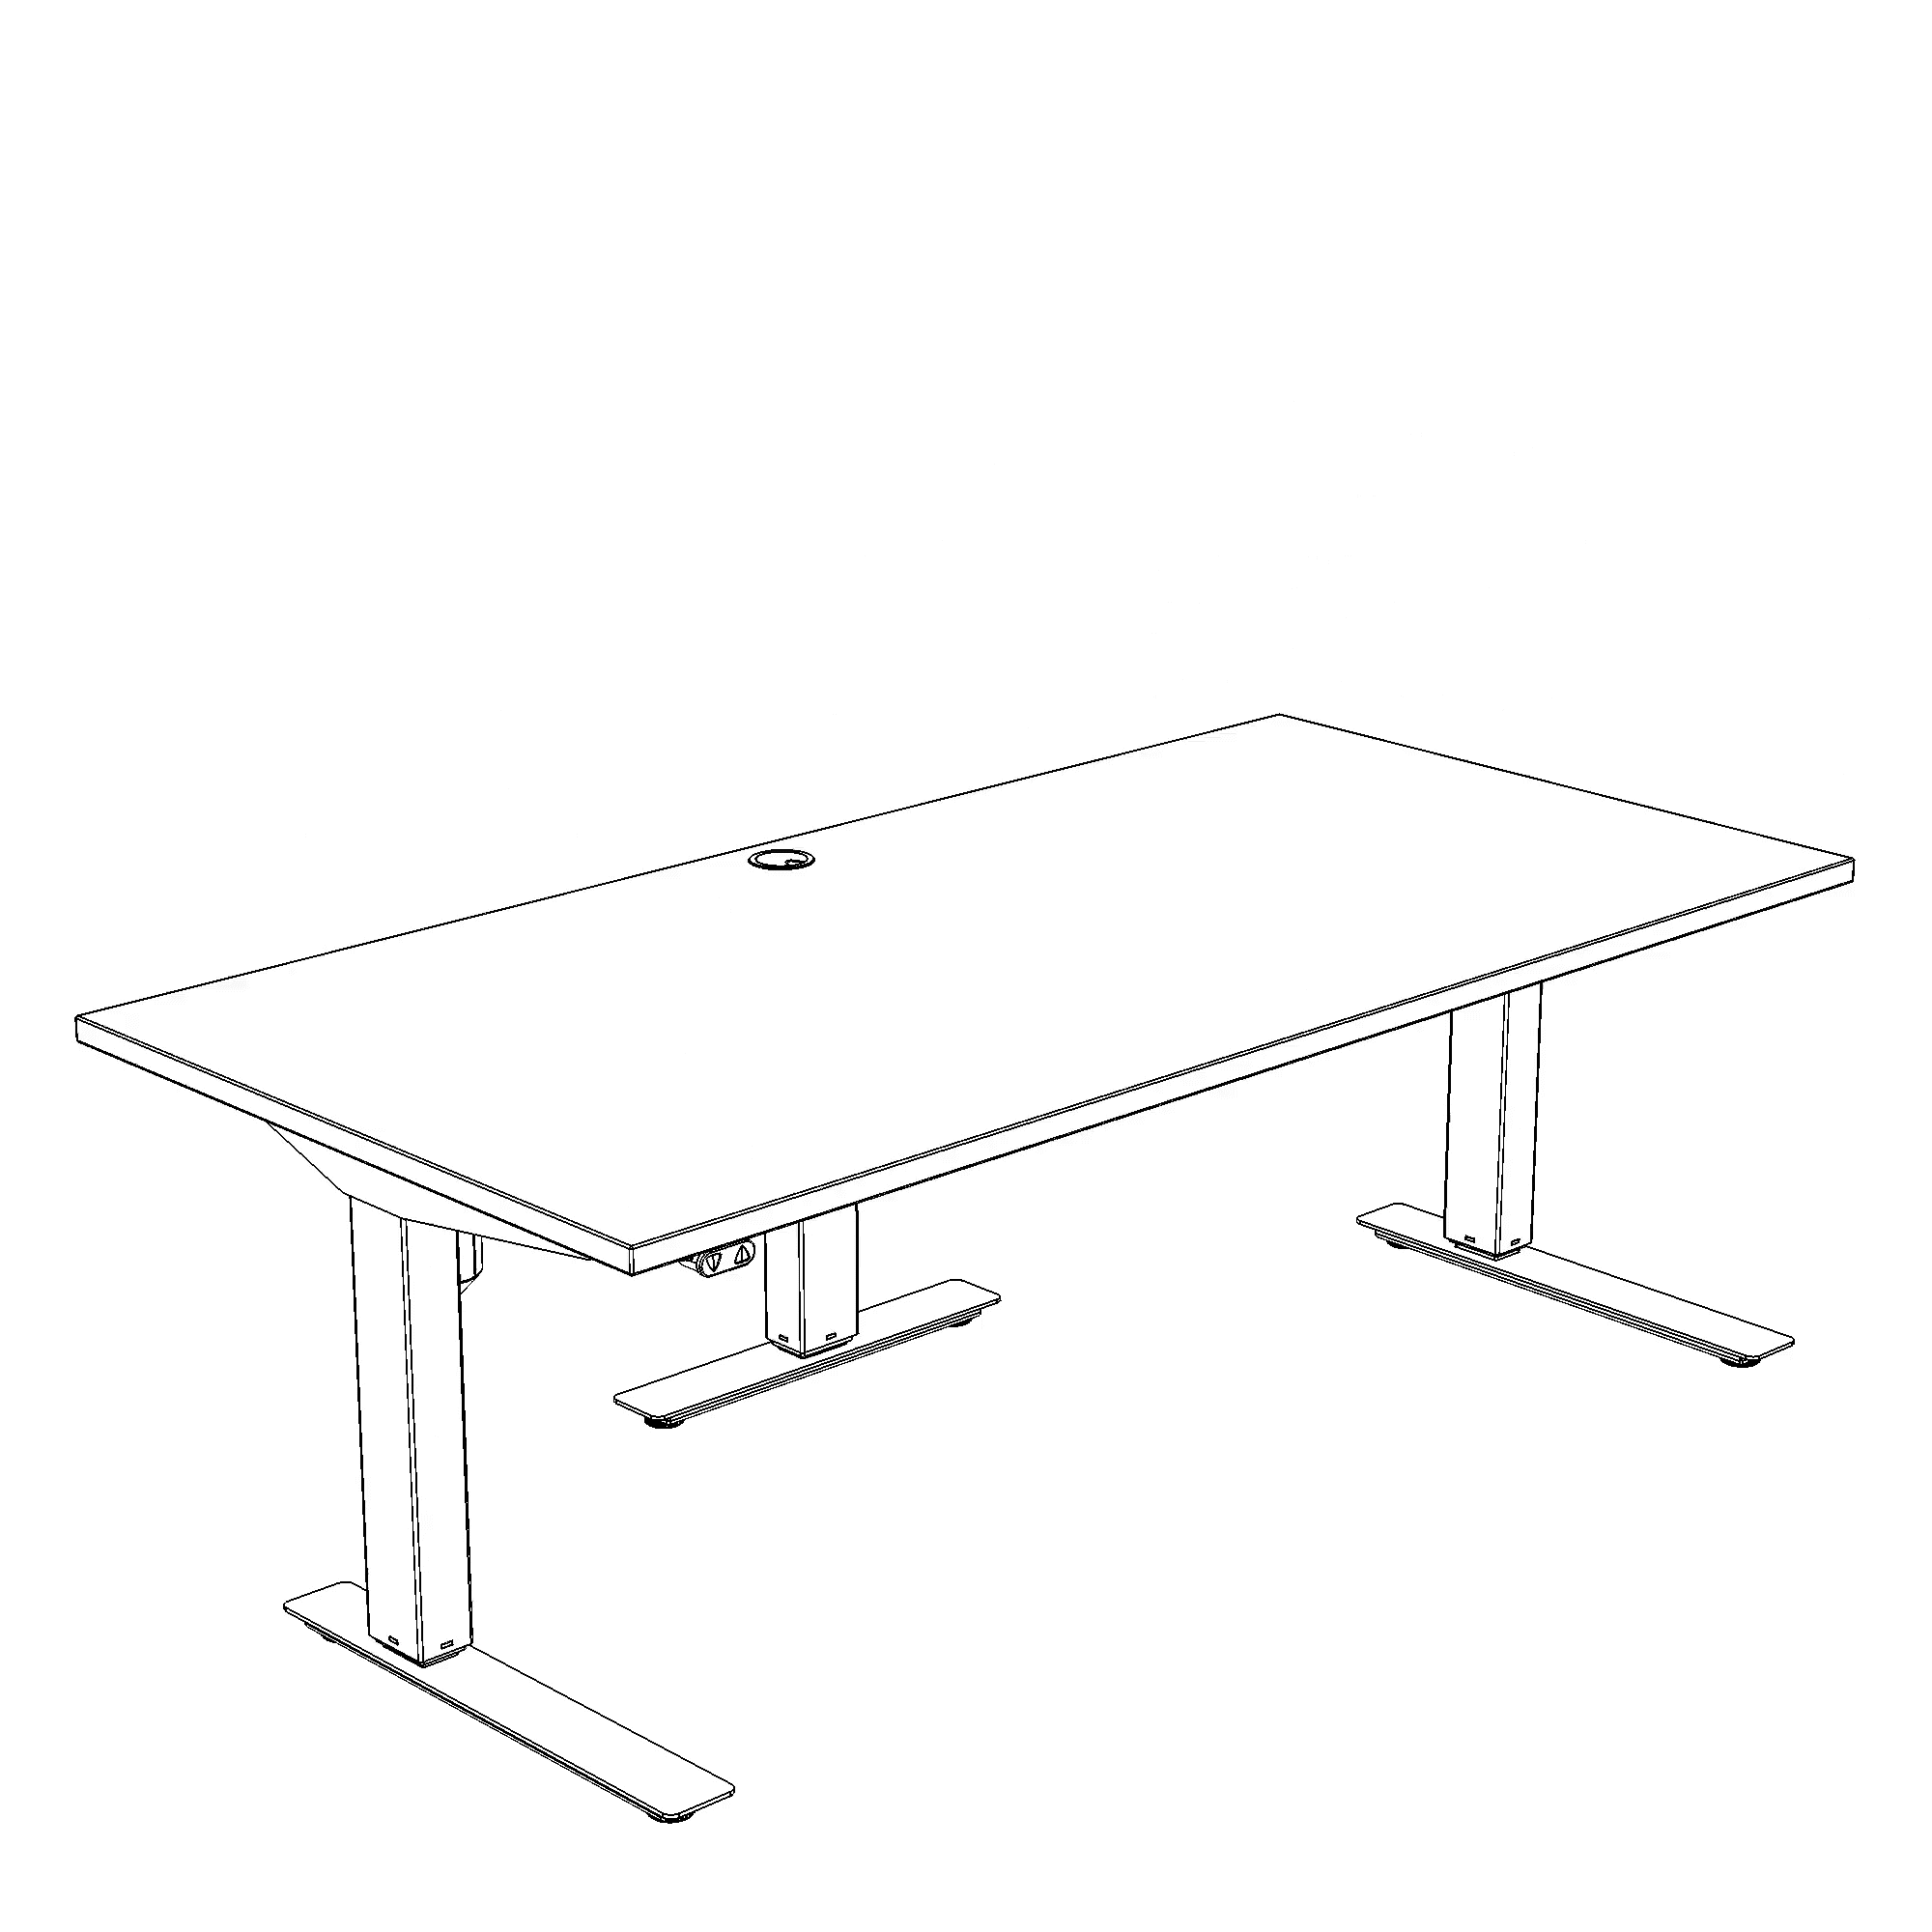 Electric Adjustable Desk | 180x80 cm | Walnut with black frame